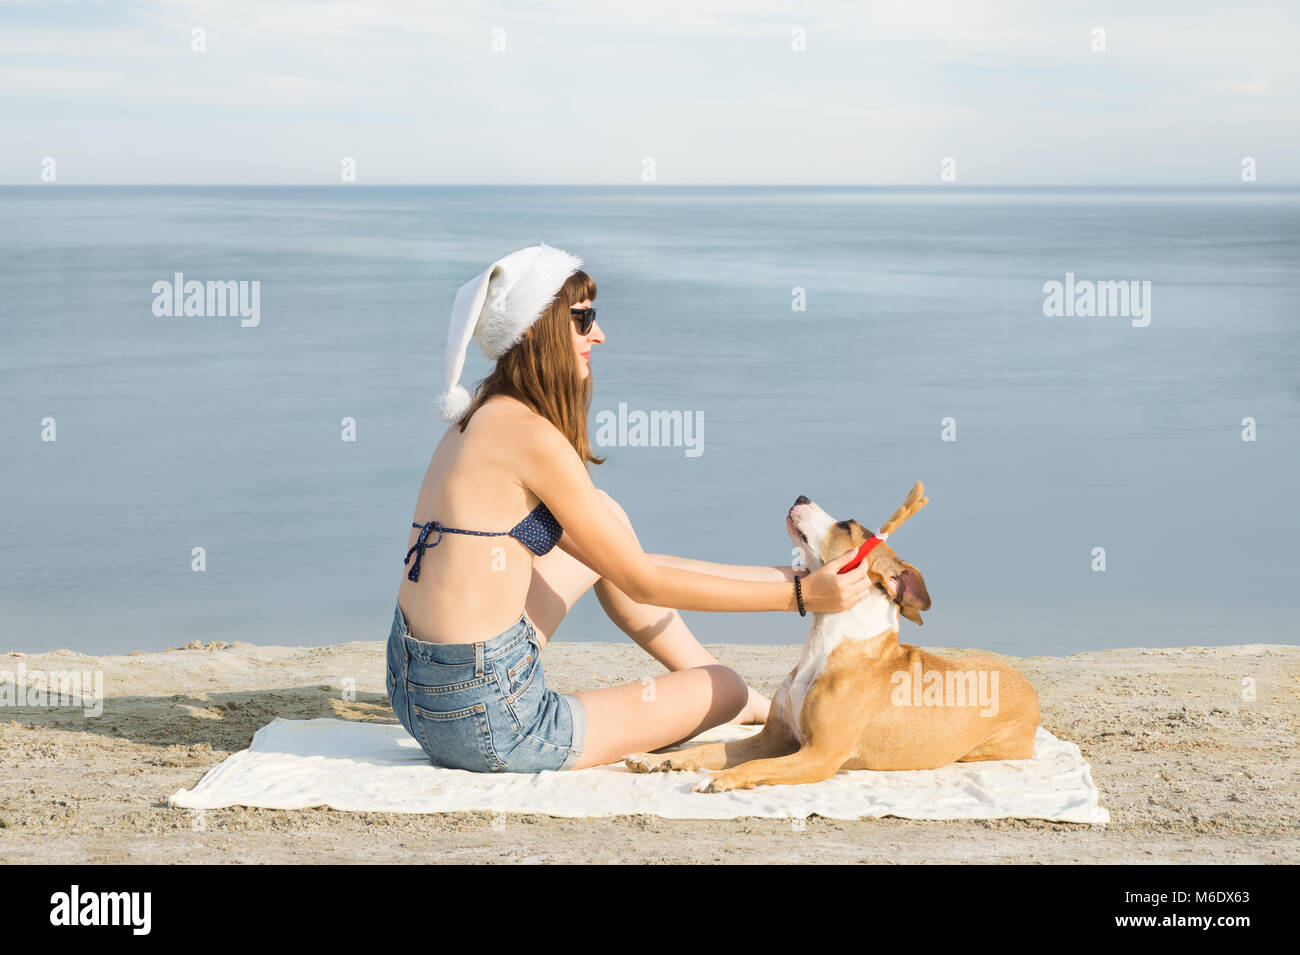 Junge weibliche Person im Bikini und Santa Claus Hut sitzt am Strand und  setzt auf Rentier Hörnern auf ihrem Staffordshire Terrier Hund  Stockfotografie - Alamy